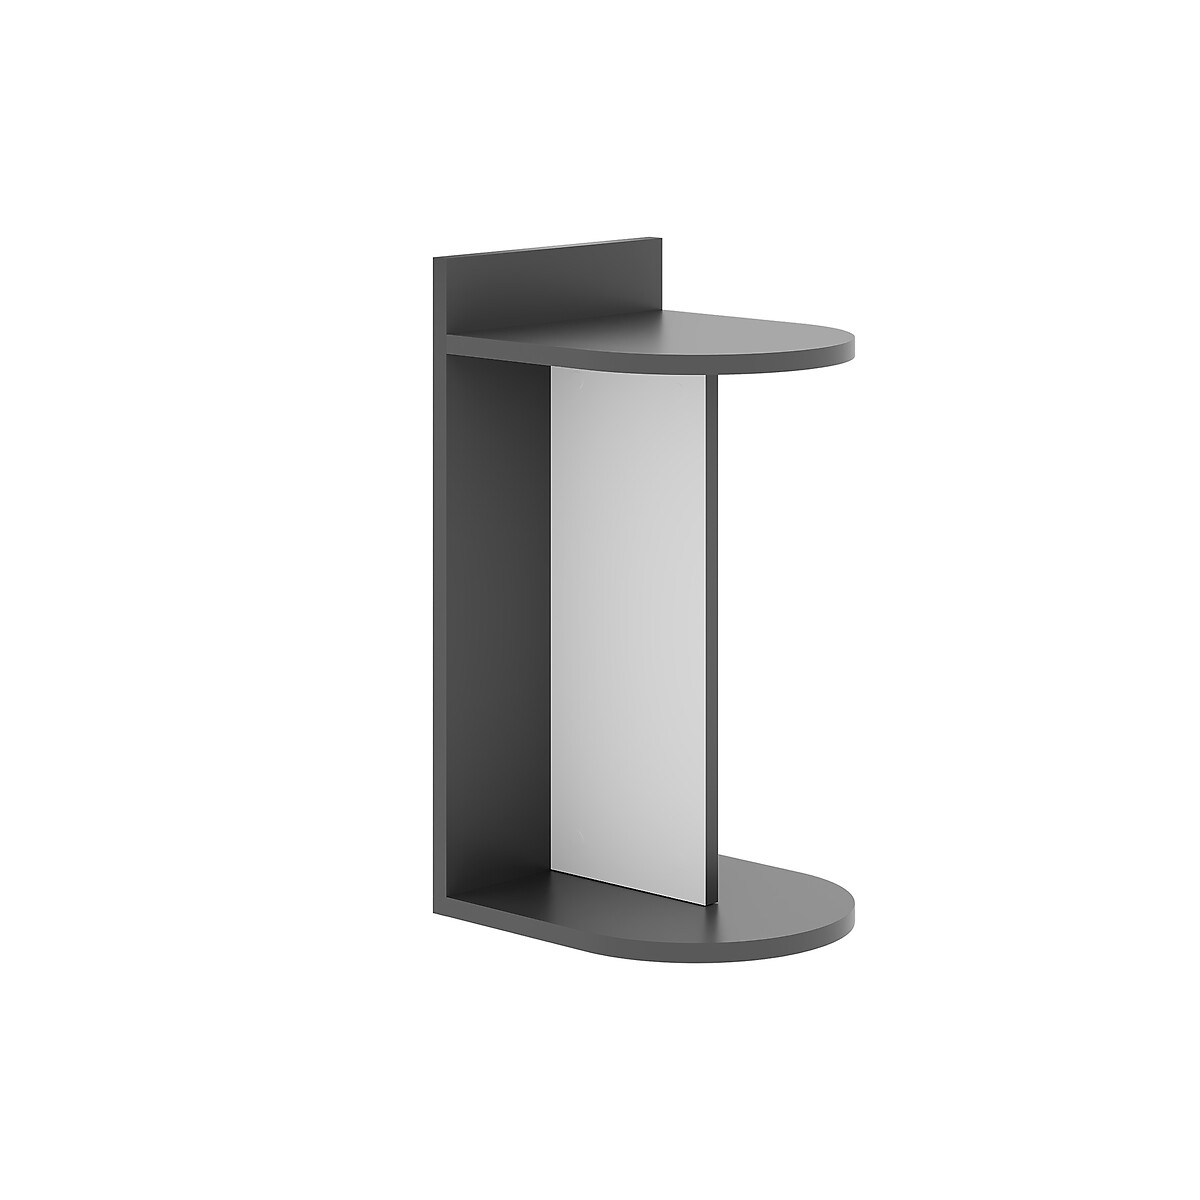 цена Стол приставной DOM SIDE TABLE единый размер серый